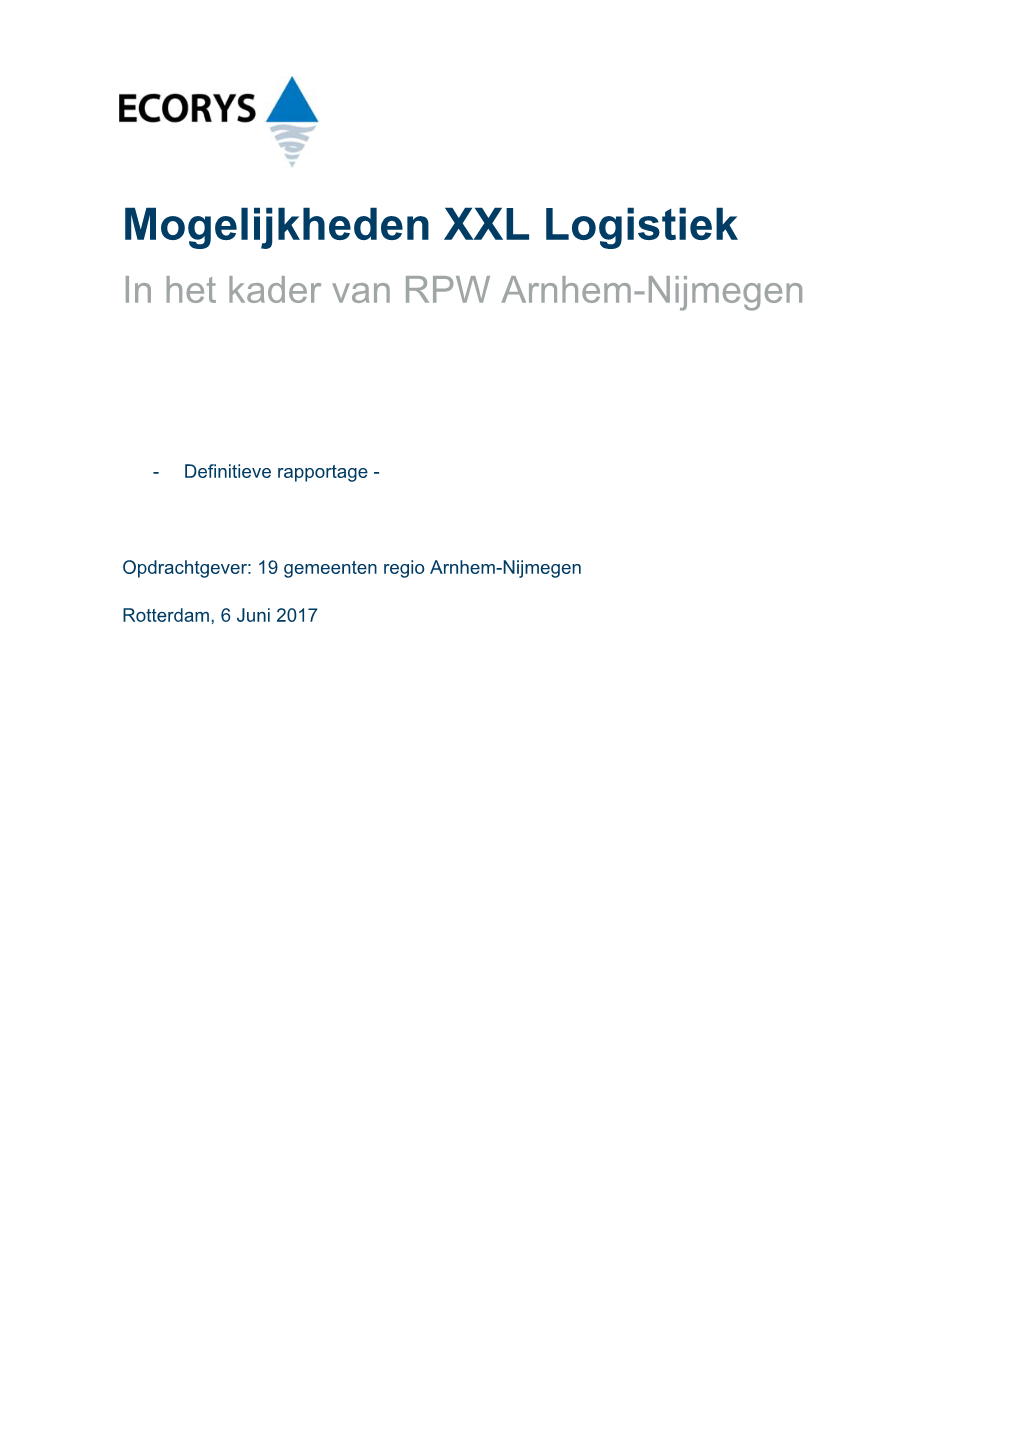 Mogelijkheden XXL Logistiek in Het Kader Van RPW Arnhem-Nijmegen